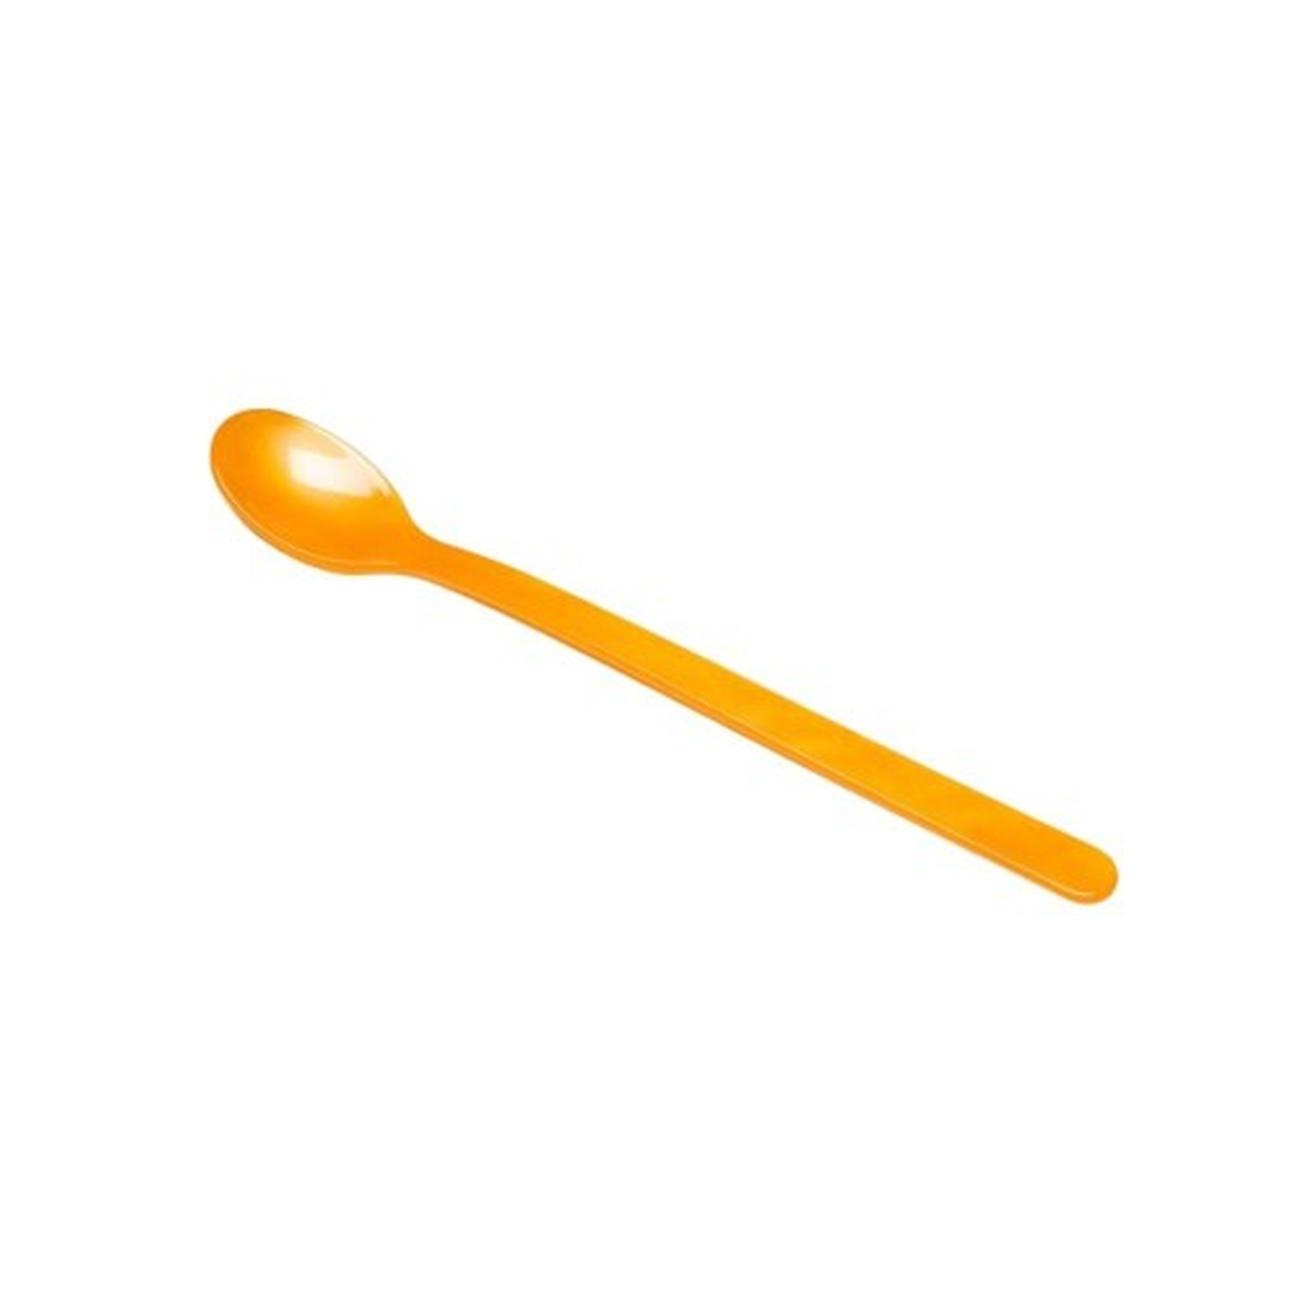 heim-sohne-long-drink-spoon-orange - Heim Sohne Long Drink Spoon-Orange